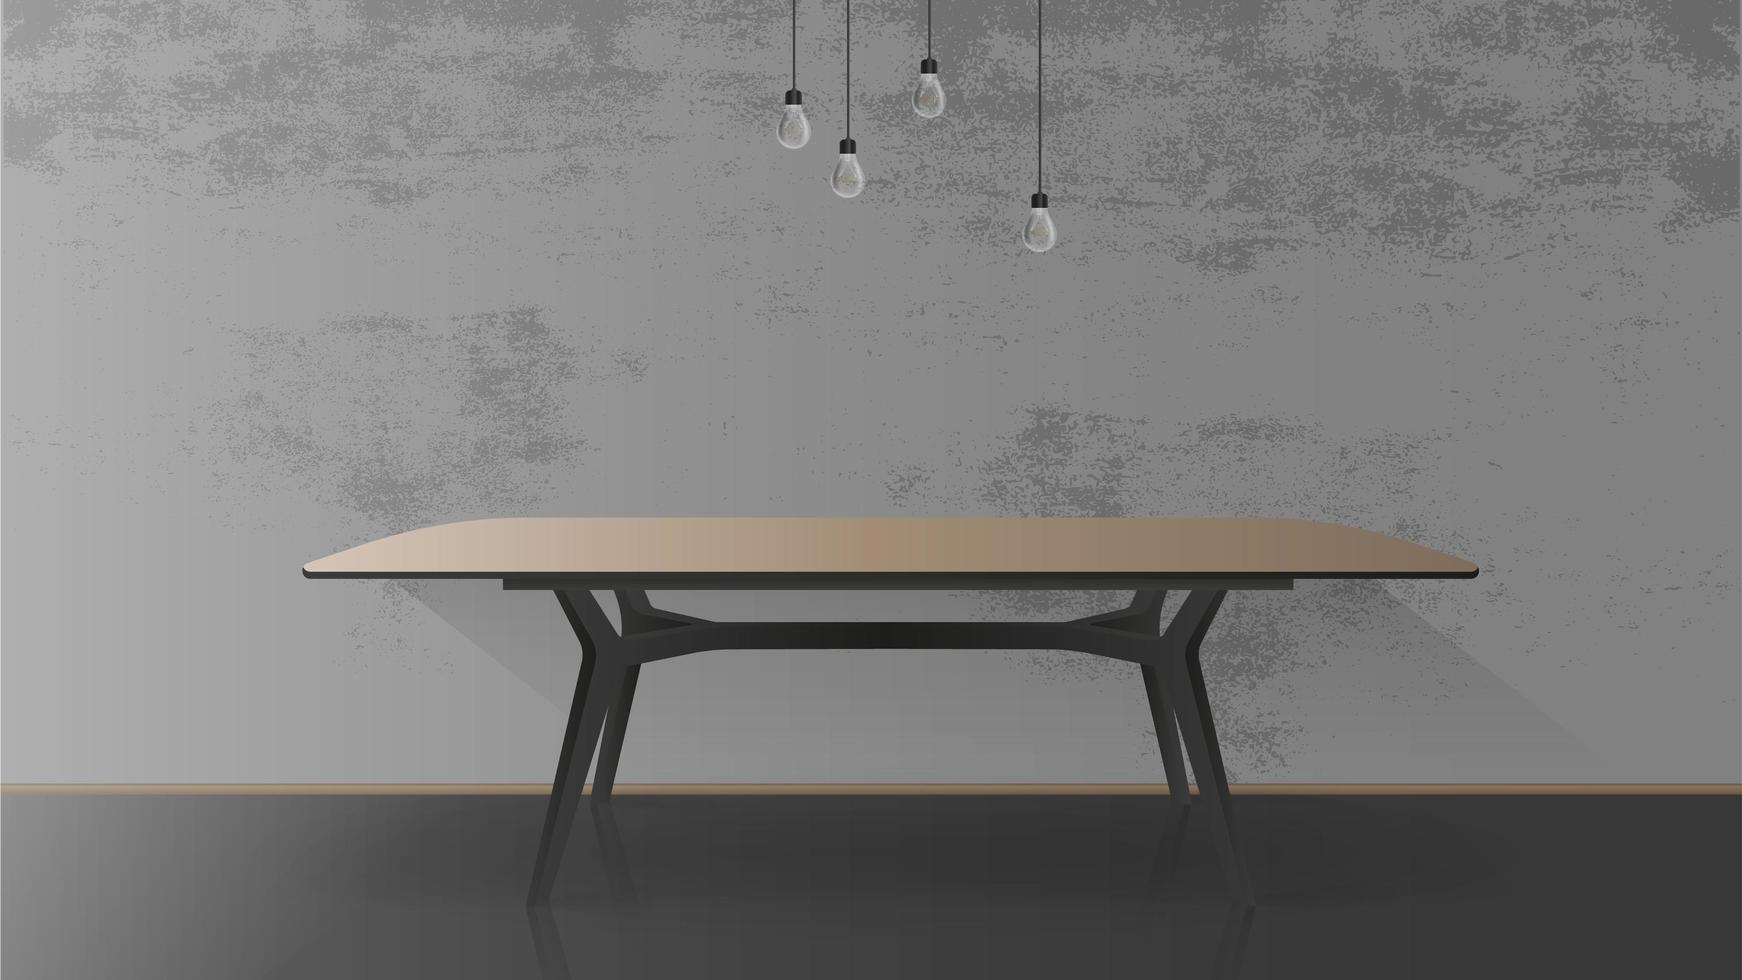 tavolo in legno con base in metallo nero. tavolo vuoto, grigio, muro di cemento. illustrazione vettoriale